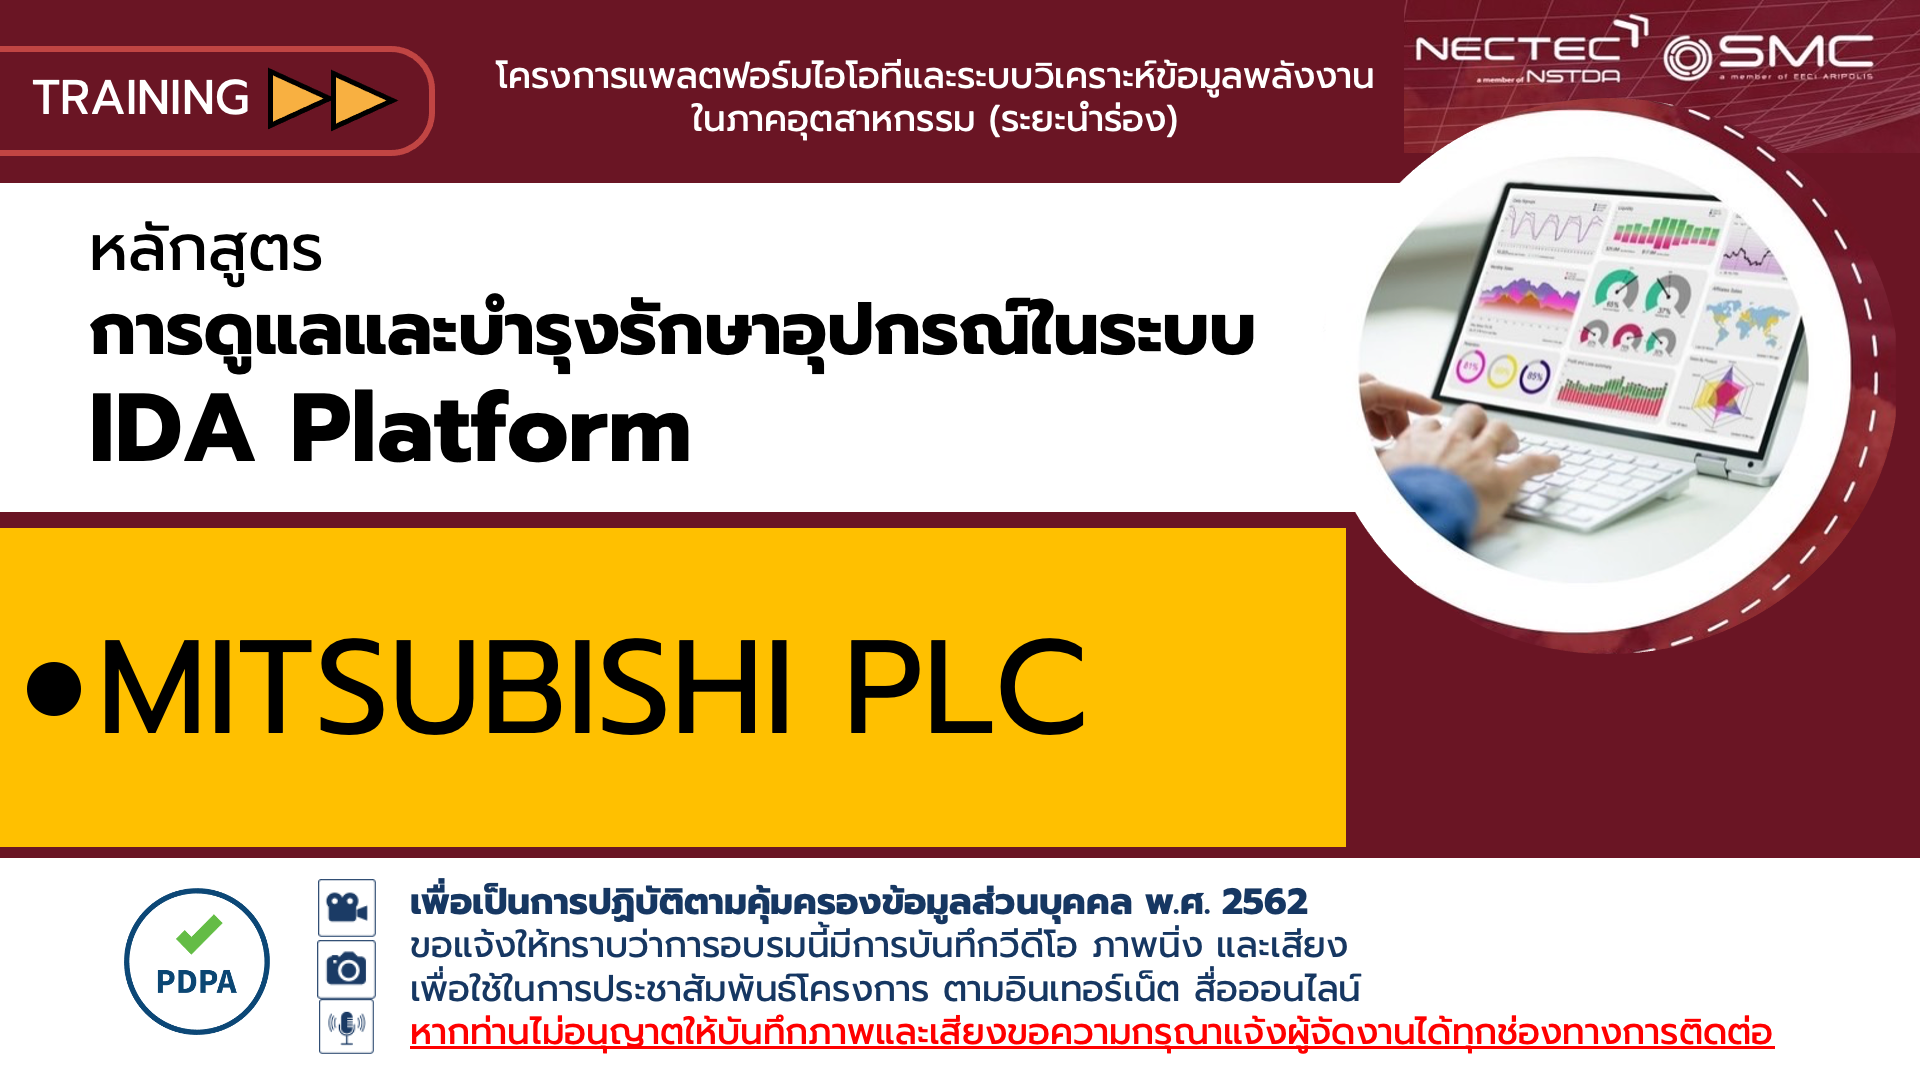 แนะนำการใช้งาน Mitsubishi PLC สำหรับ IDA Platform